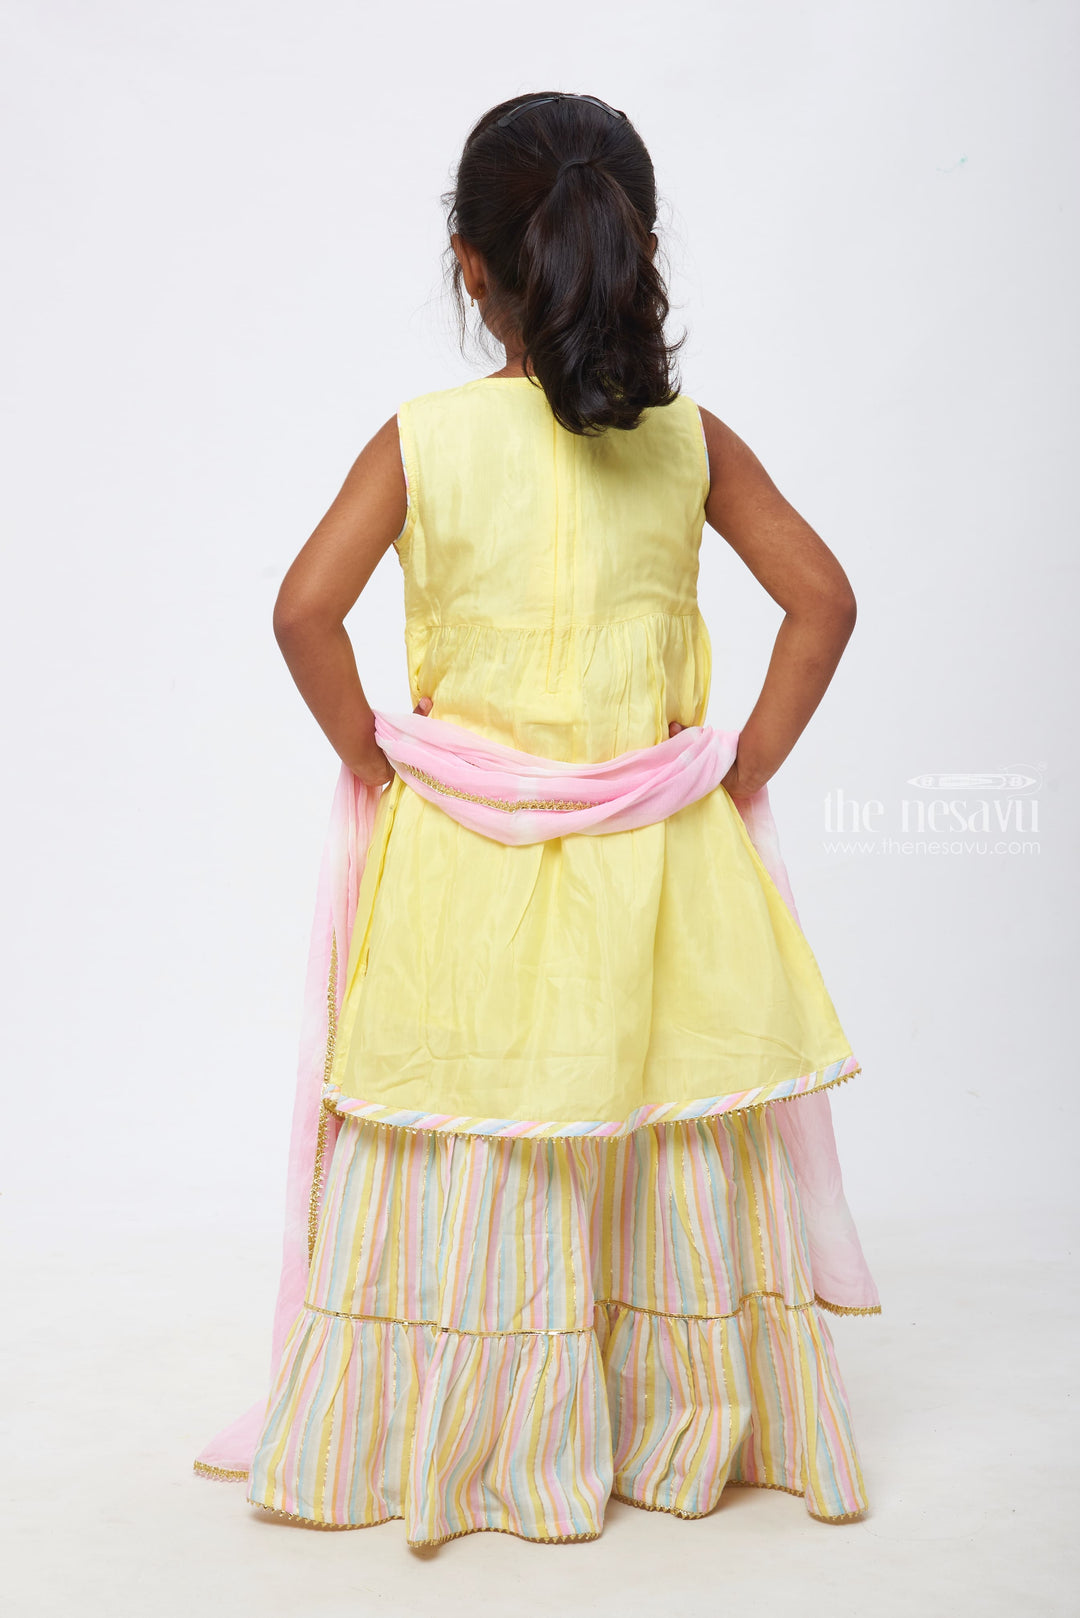 The Nesavu Girls Lehenga Choli Pastel Yellow Kurti with Multi-Colored Striped Lehenga and Soft Pink Dupatta Set for Girls Nesavu Youthful Festive Wear for Girls | Lehenga Choli Designer Set | The Nesavu